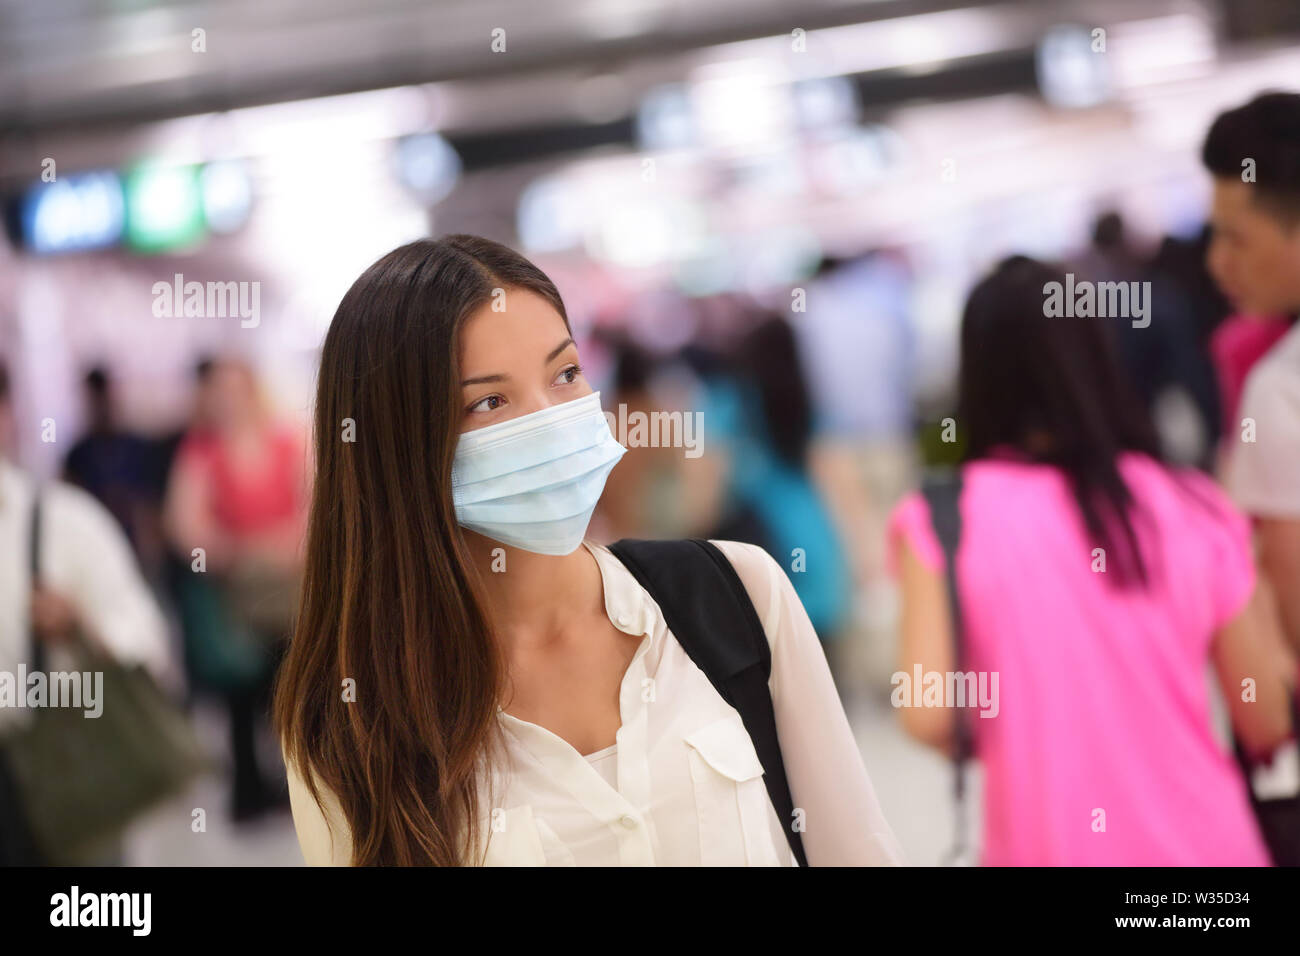 Persona che indossa la maschera di protezione contro le encefalopatie malattie infettive e come protezione contro l'inquinamento e l'influenza. Donna asiatica commuter in airport area pubblica. Foto Stock